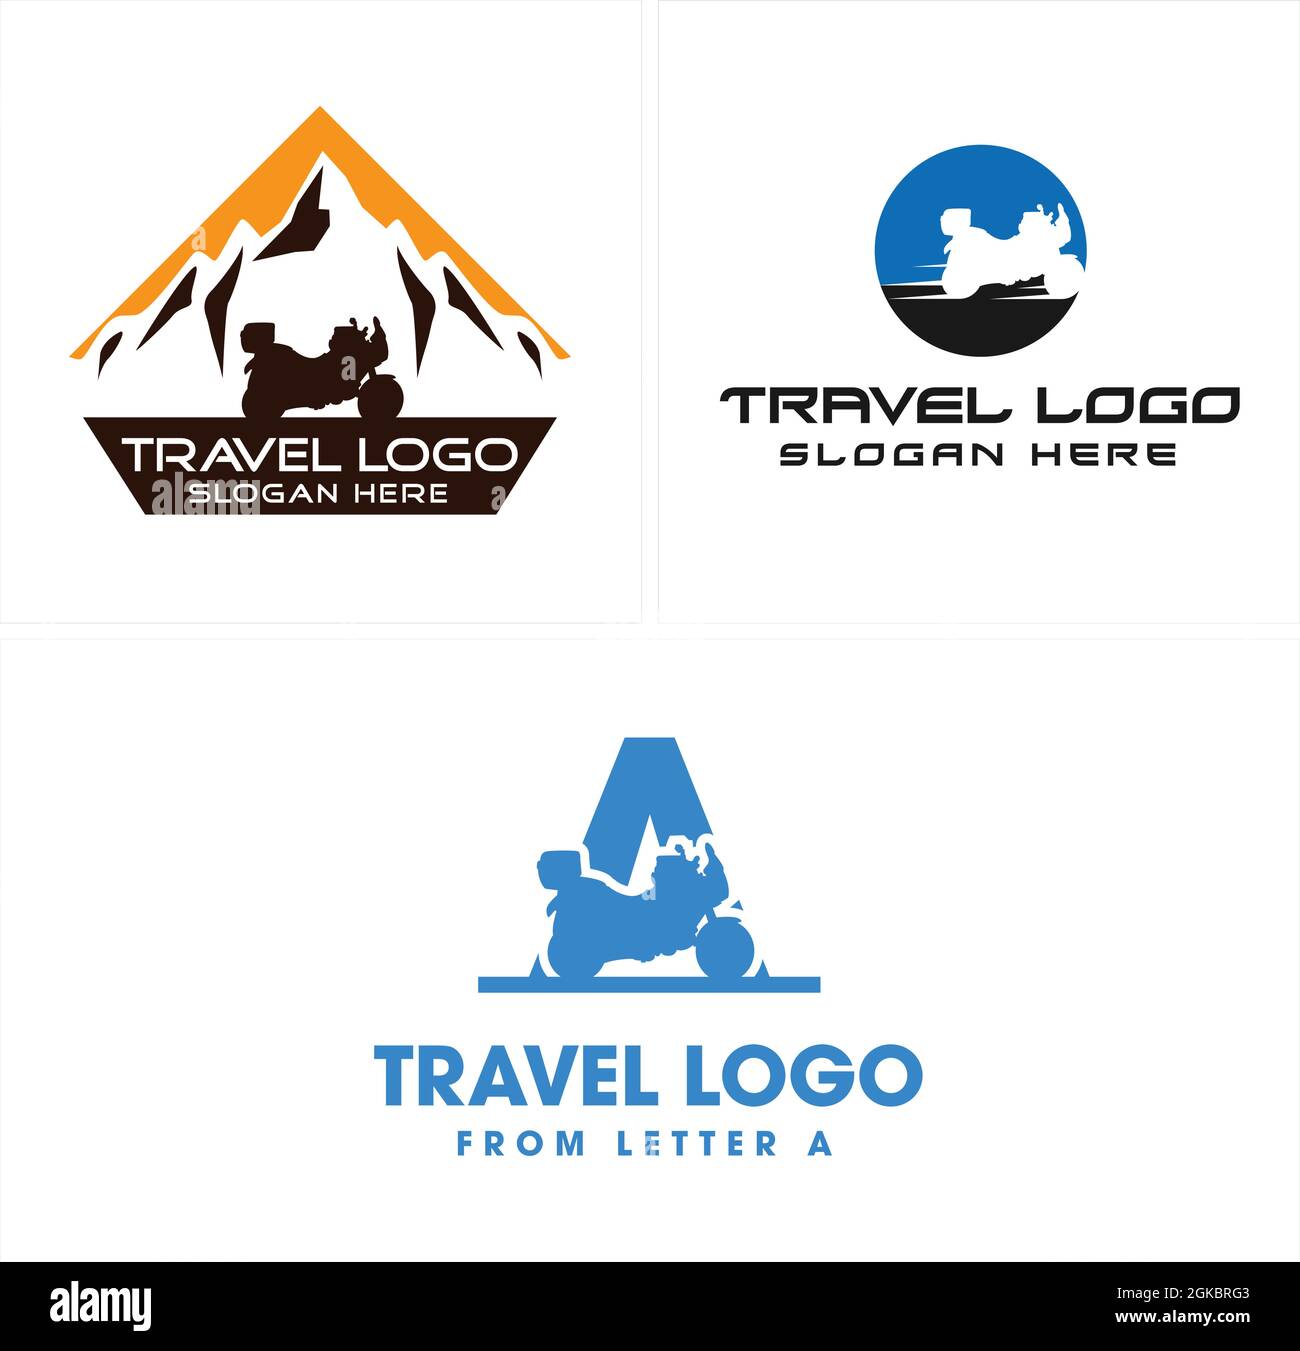 Travel adventures motorcycle mountain logo design Stock Vector